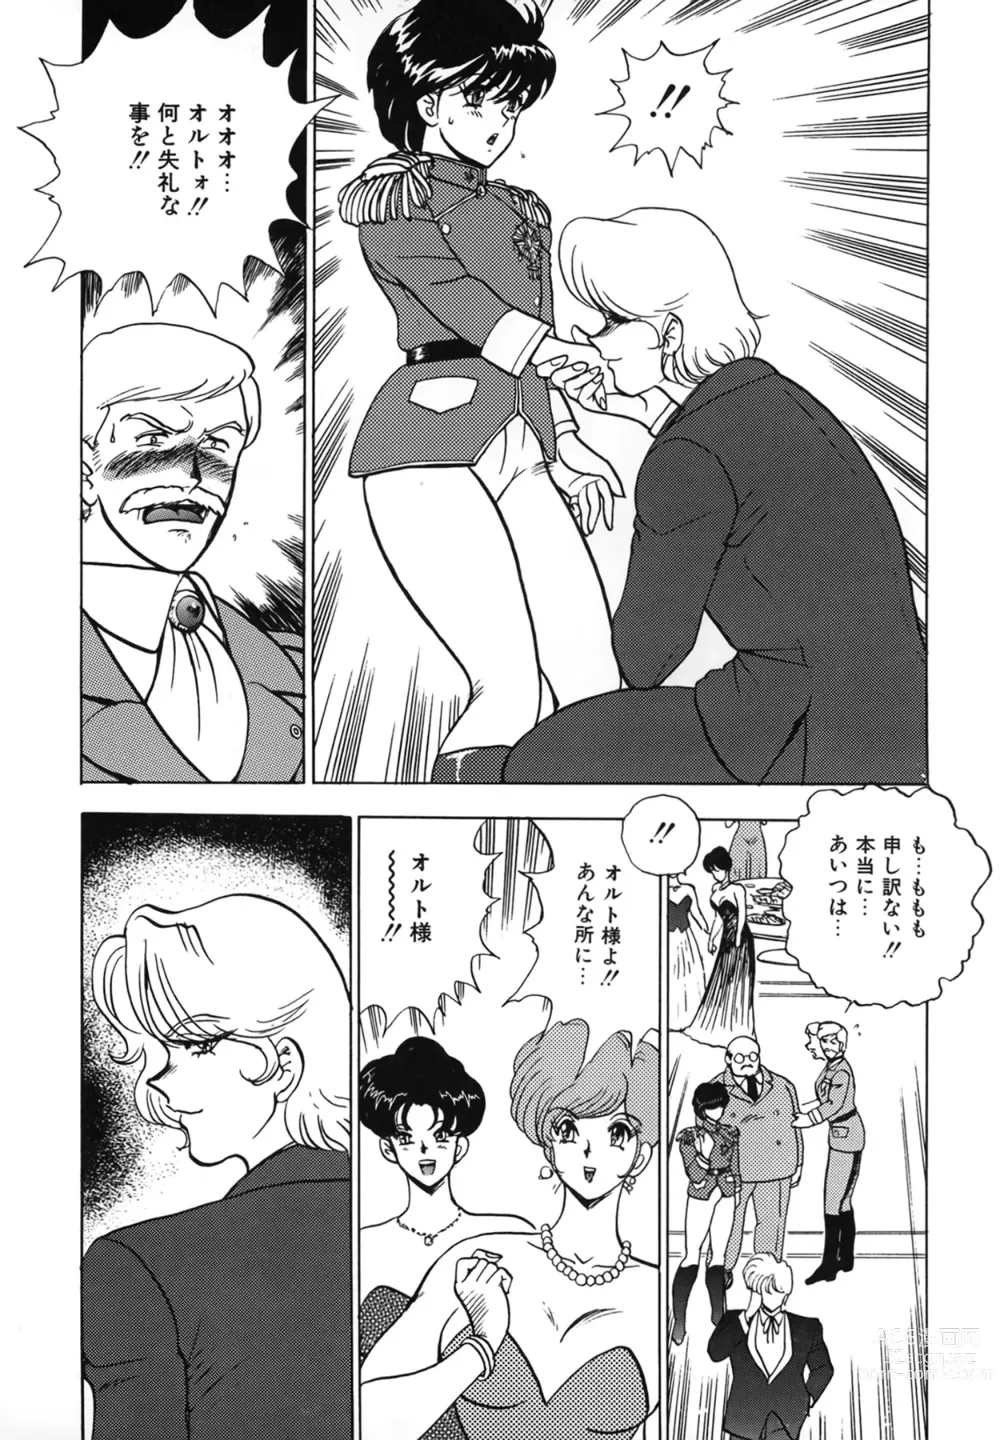 Page 9 of manga Inbi Teikoku